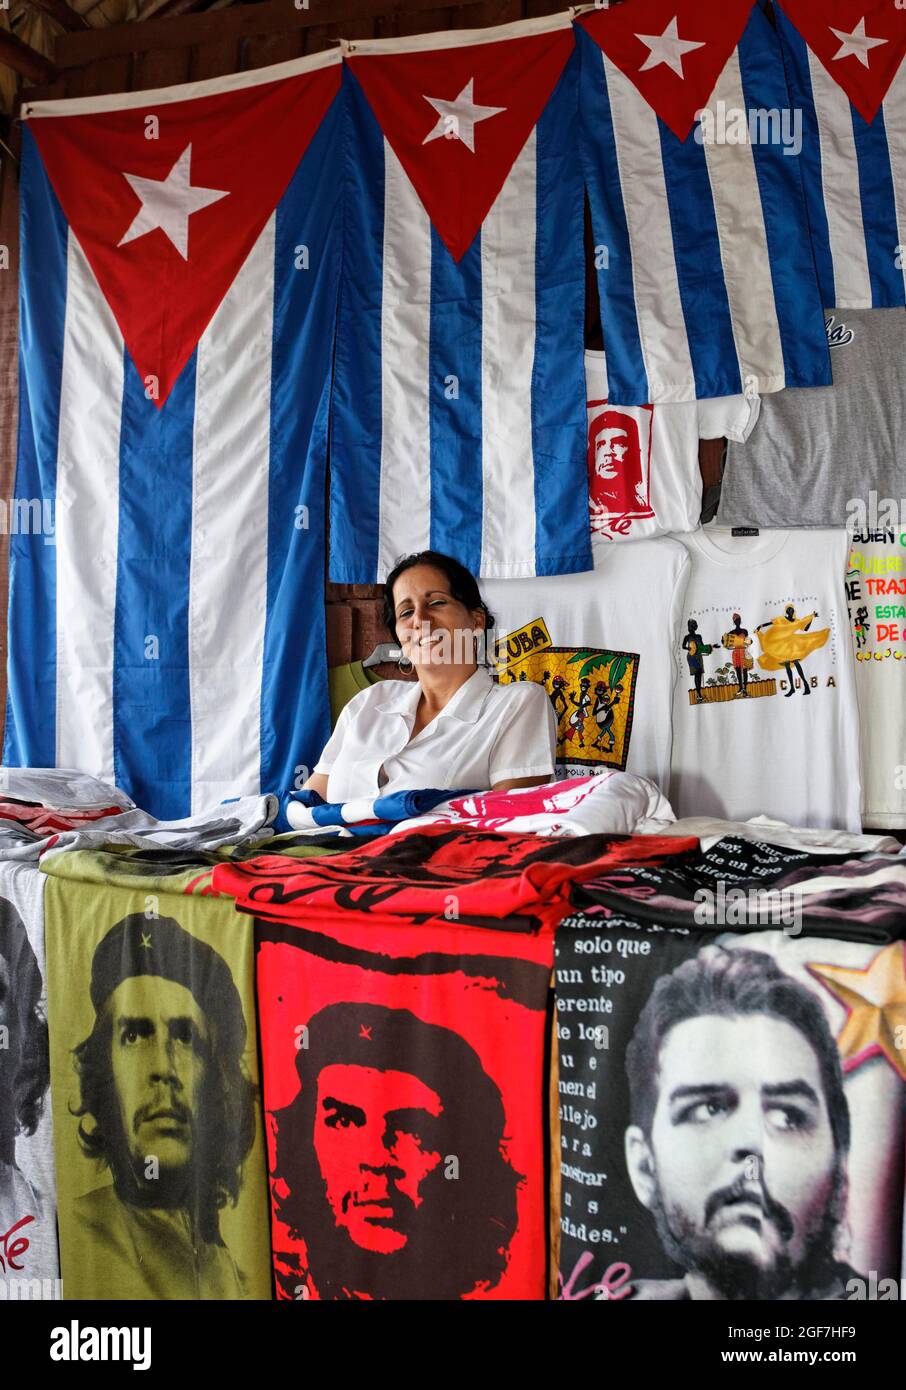 Kubanische Frau, die Souvenirs verkauft, kubanische Flagge, T-Shirts mit Porträt von Ernesto Che Guevara, Nationalpark Jardines de la Reina, Archipel, Camagueey Stockfoto